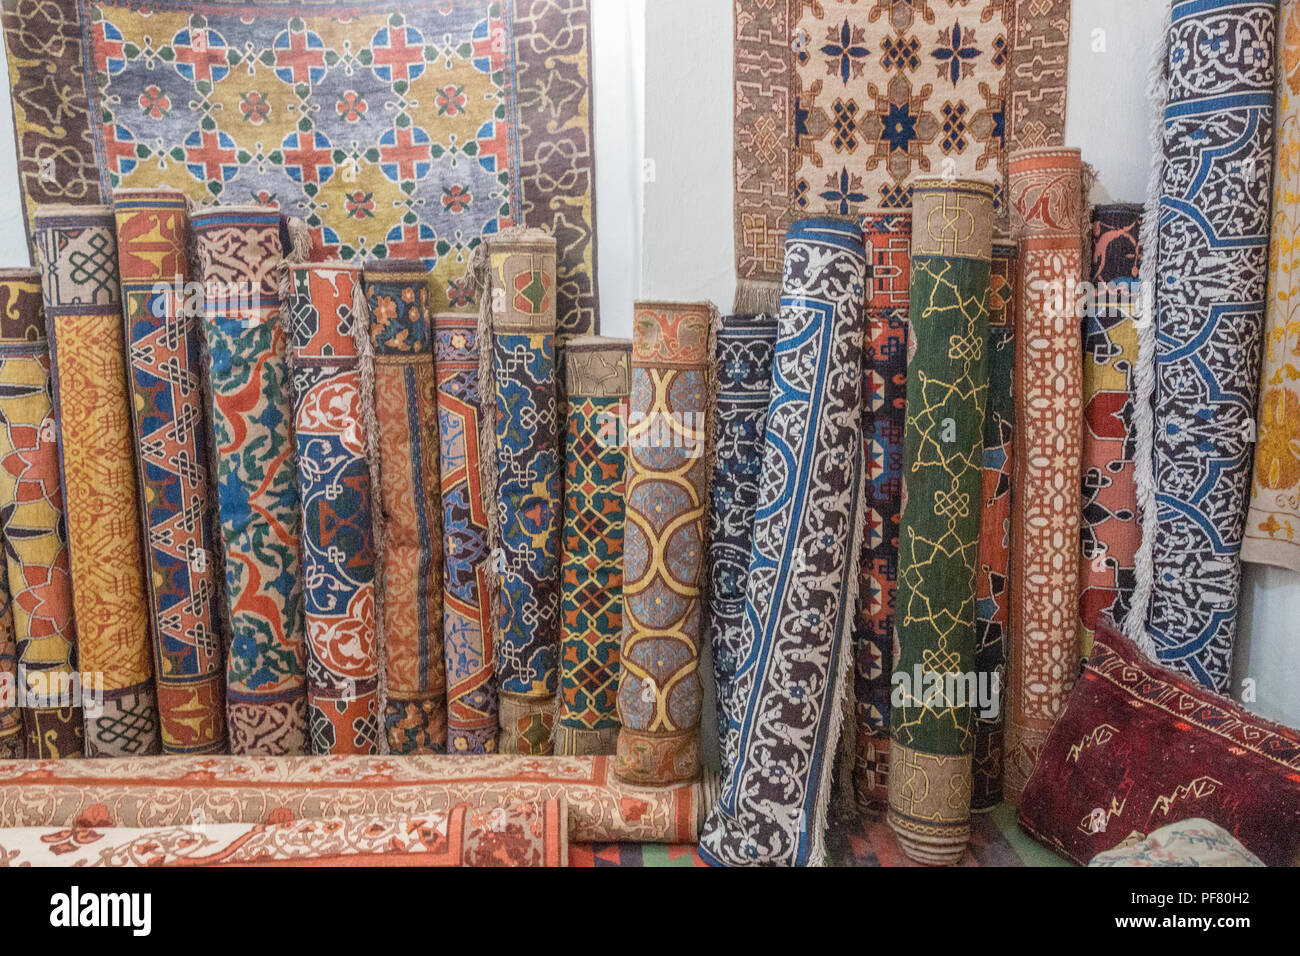 Traditionelle Teppiche in einer Werkstatt in Chiwa Usbekistan,  Seidenstraße, Zentralasien Stockfotografie - Alamy